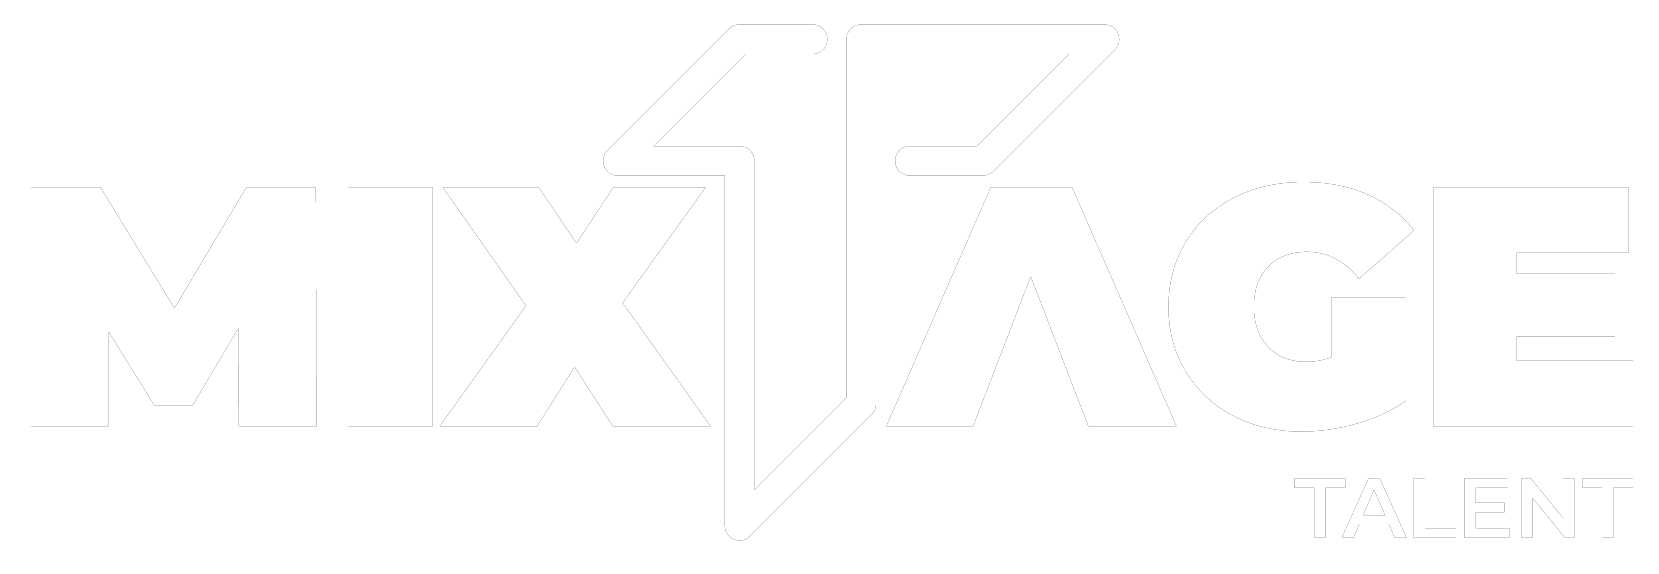 Mixtage Talent logo